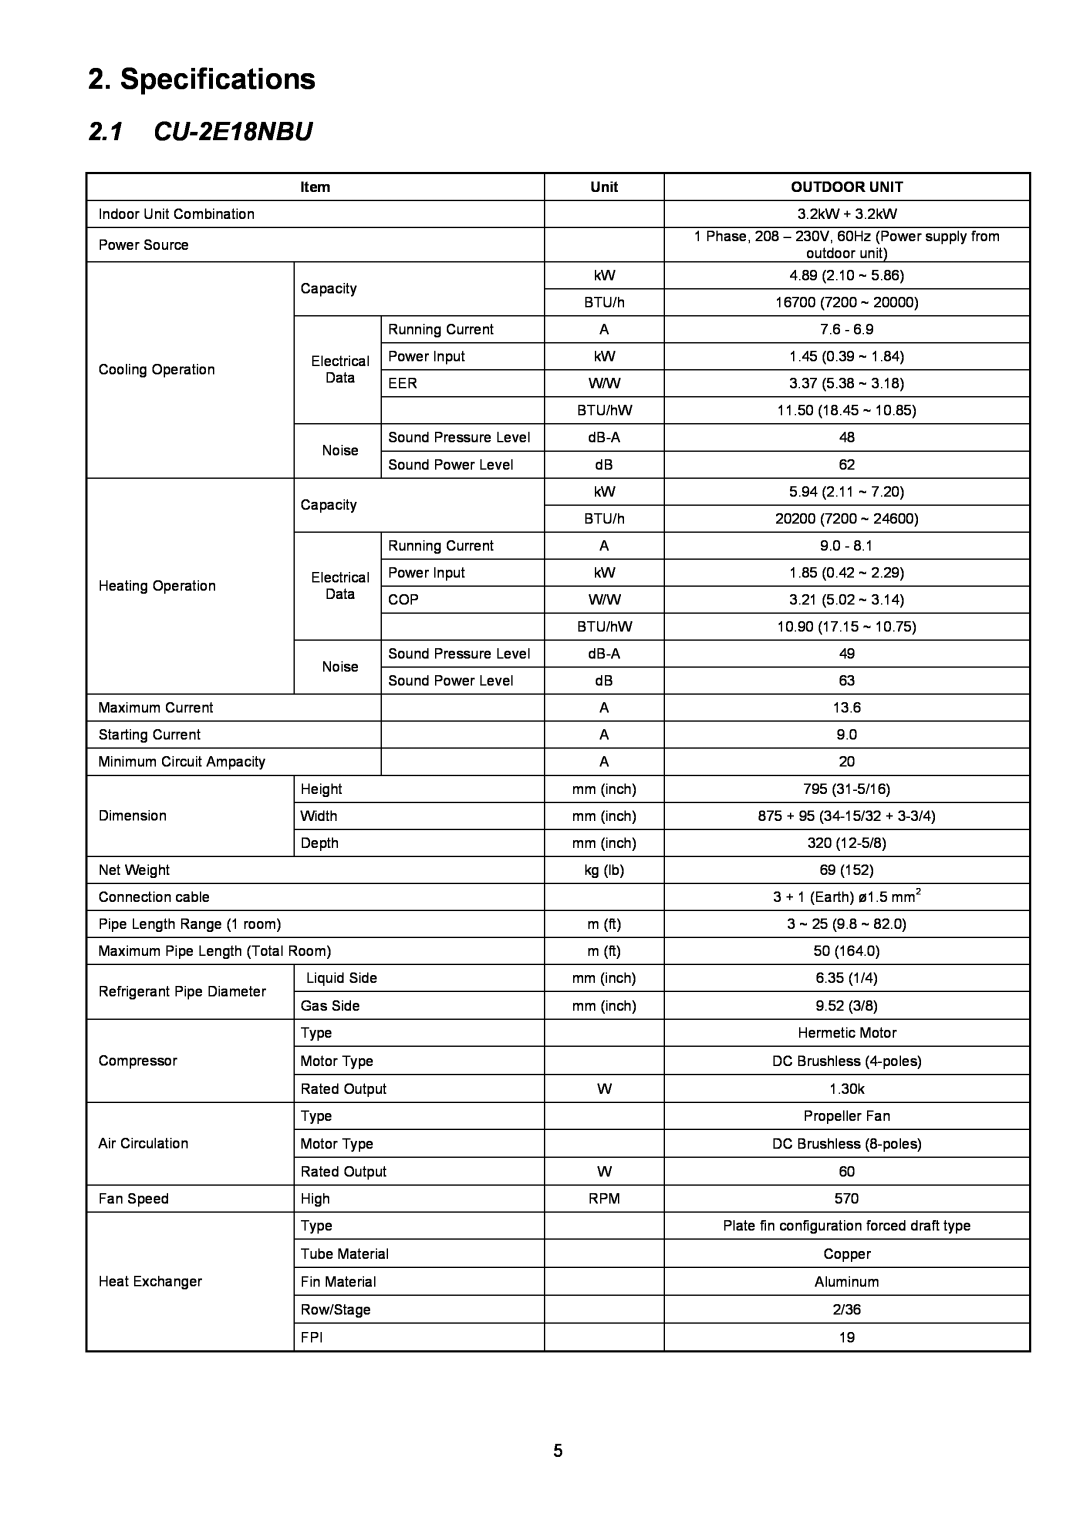 Panasonic service manual Specifications, 2.1CU-2E18NBU, Outdoor Unit 